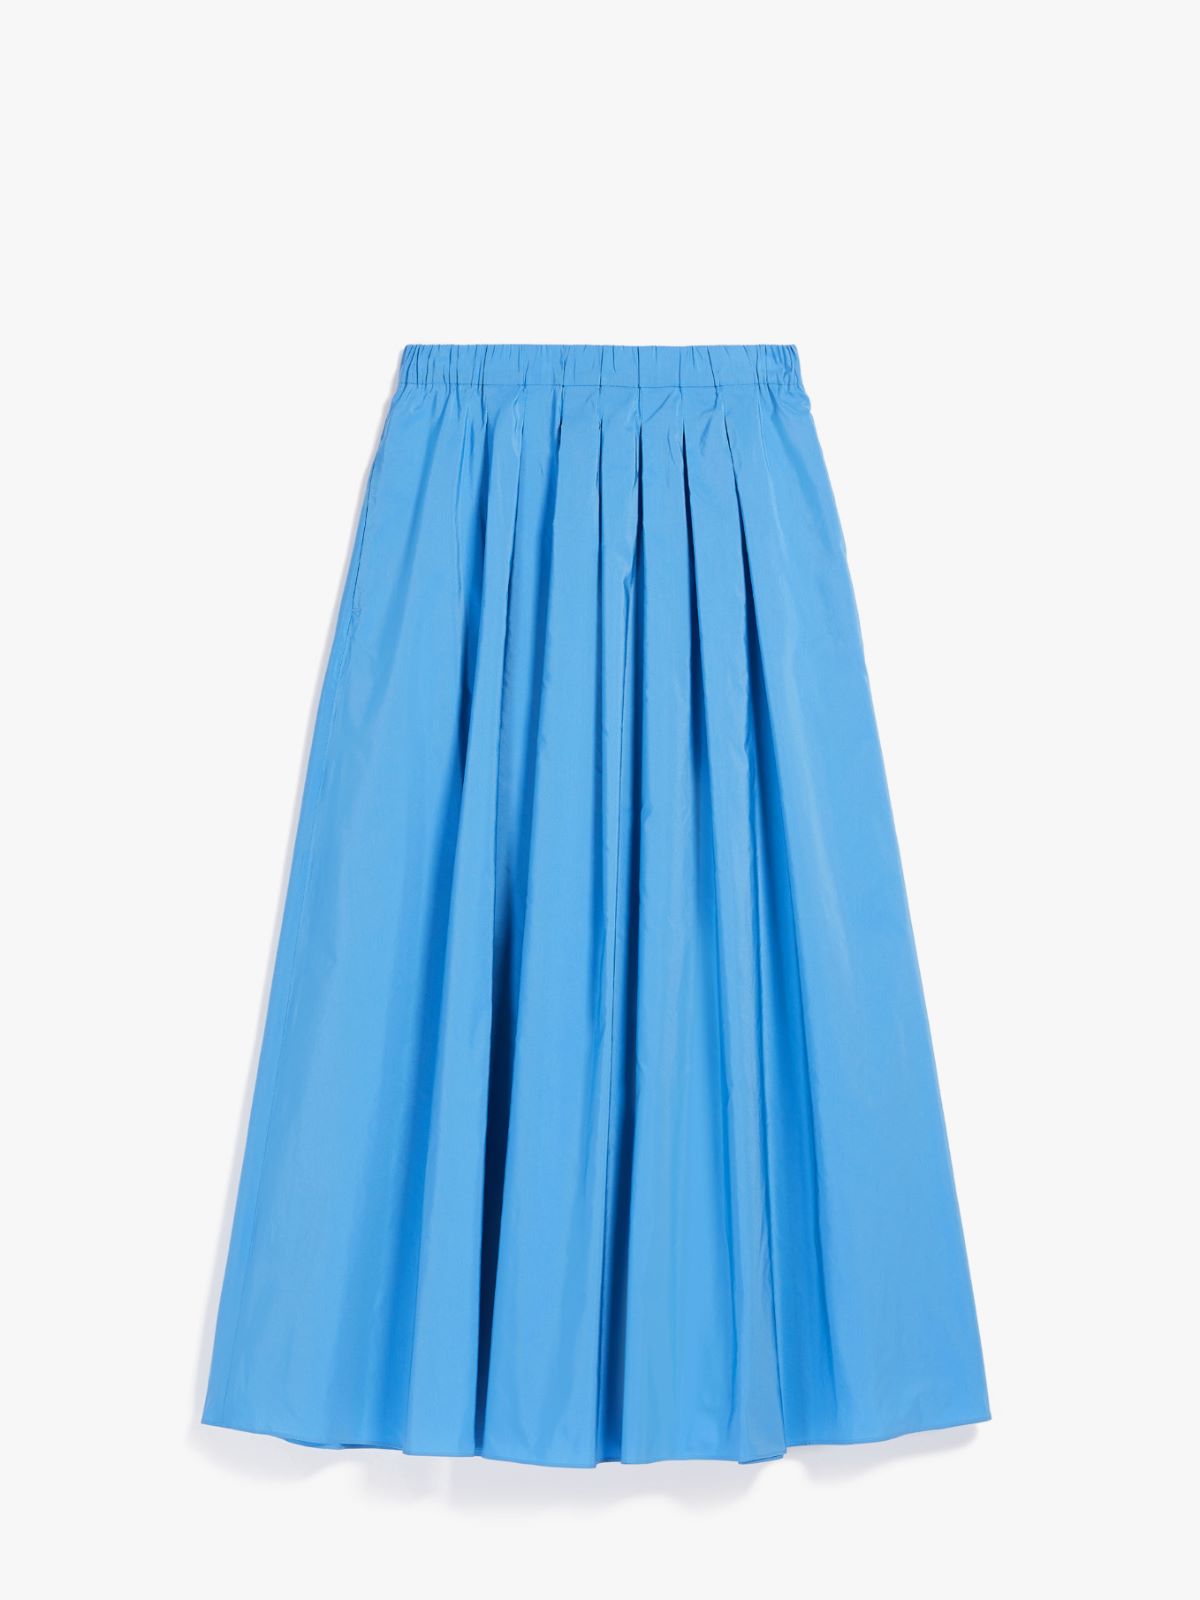 Taffeta skirt - LIGHT BLUE - Weekend Max Mara - 5